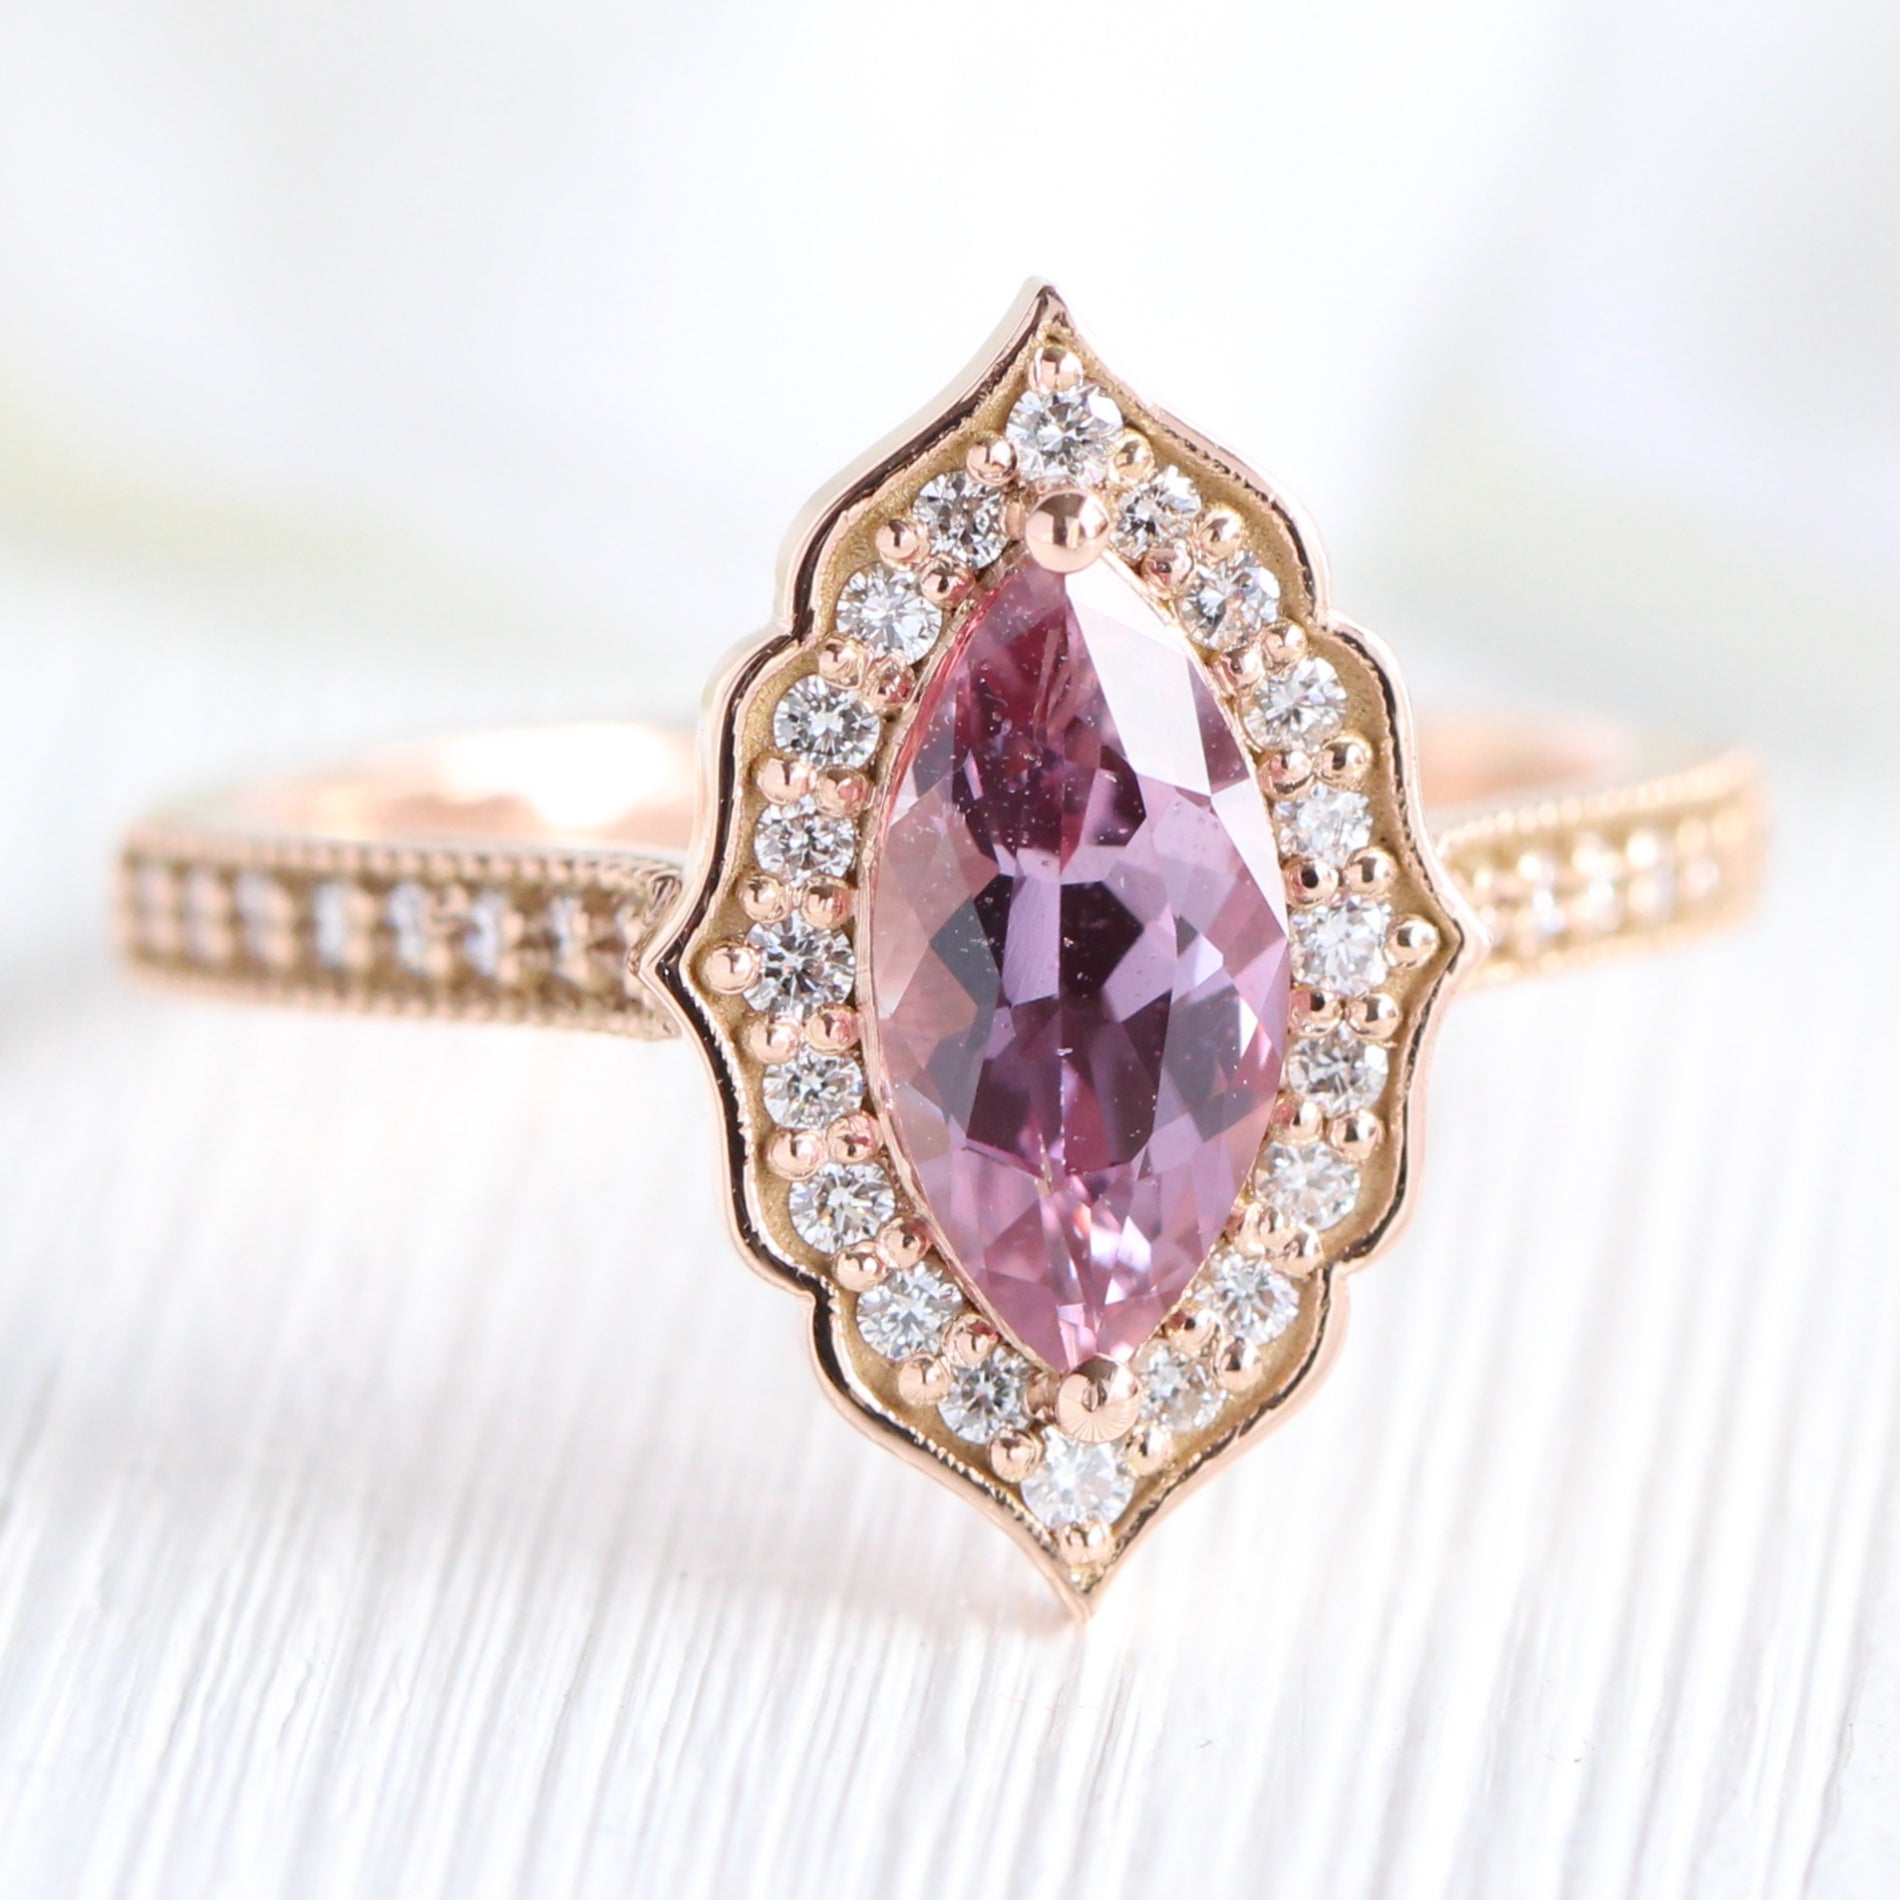 Million Dollar Pink Diamond Ring.wmv - YouTube